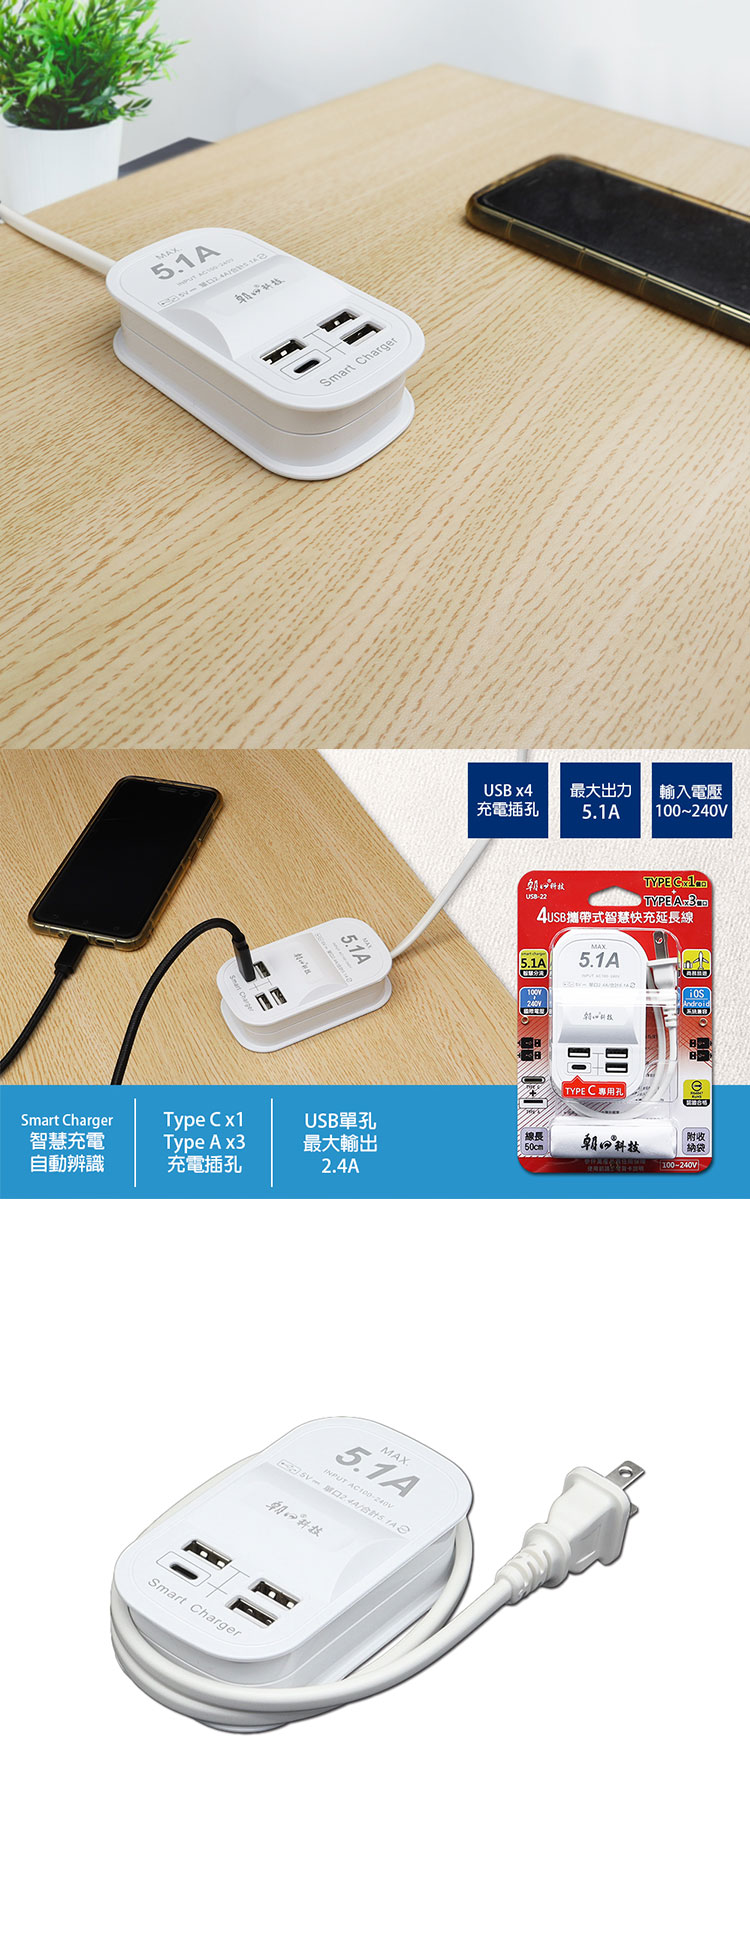 朝日科技-USB-22-USB3-Type-C1-攜帶式智慧快充延長線-內.jpg